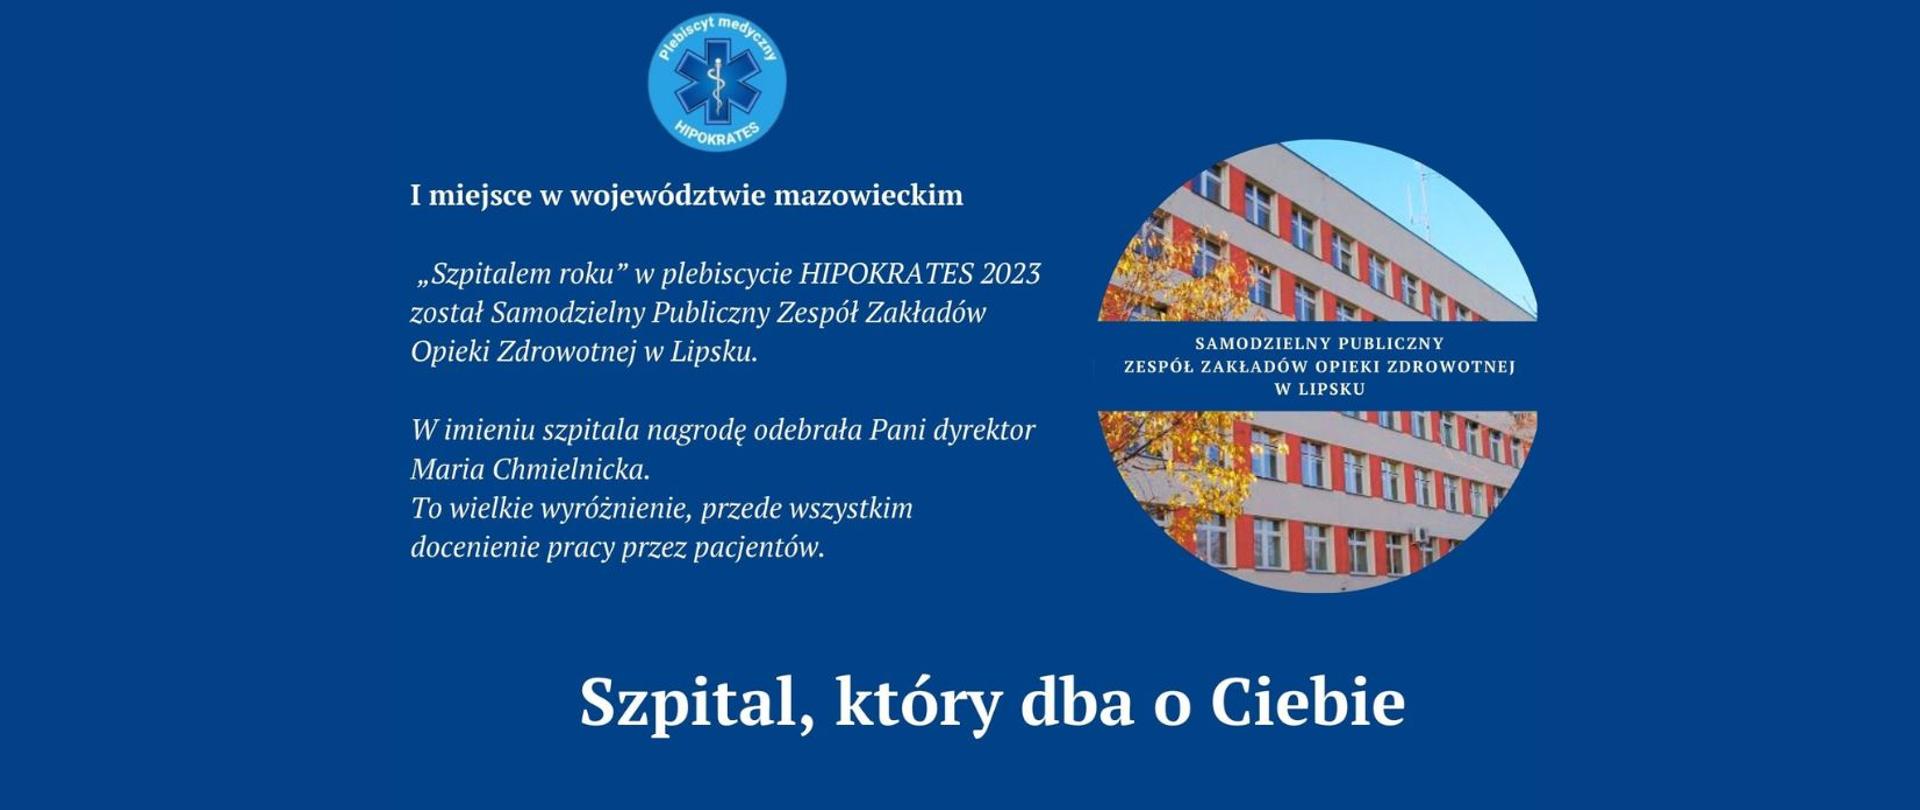 Informacja o I miejscu w plebiscycie ze zdjęciem szpitala i nazwą w okrągłej grafice po prawej stronie na granatowym tle.